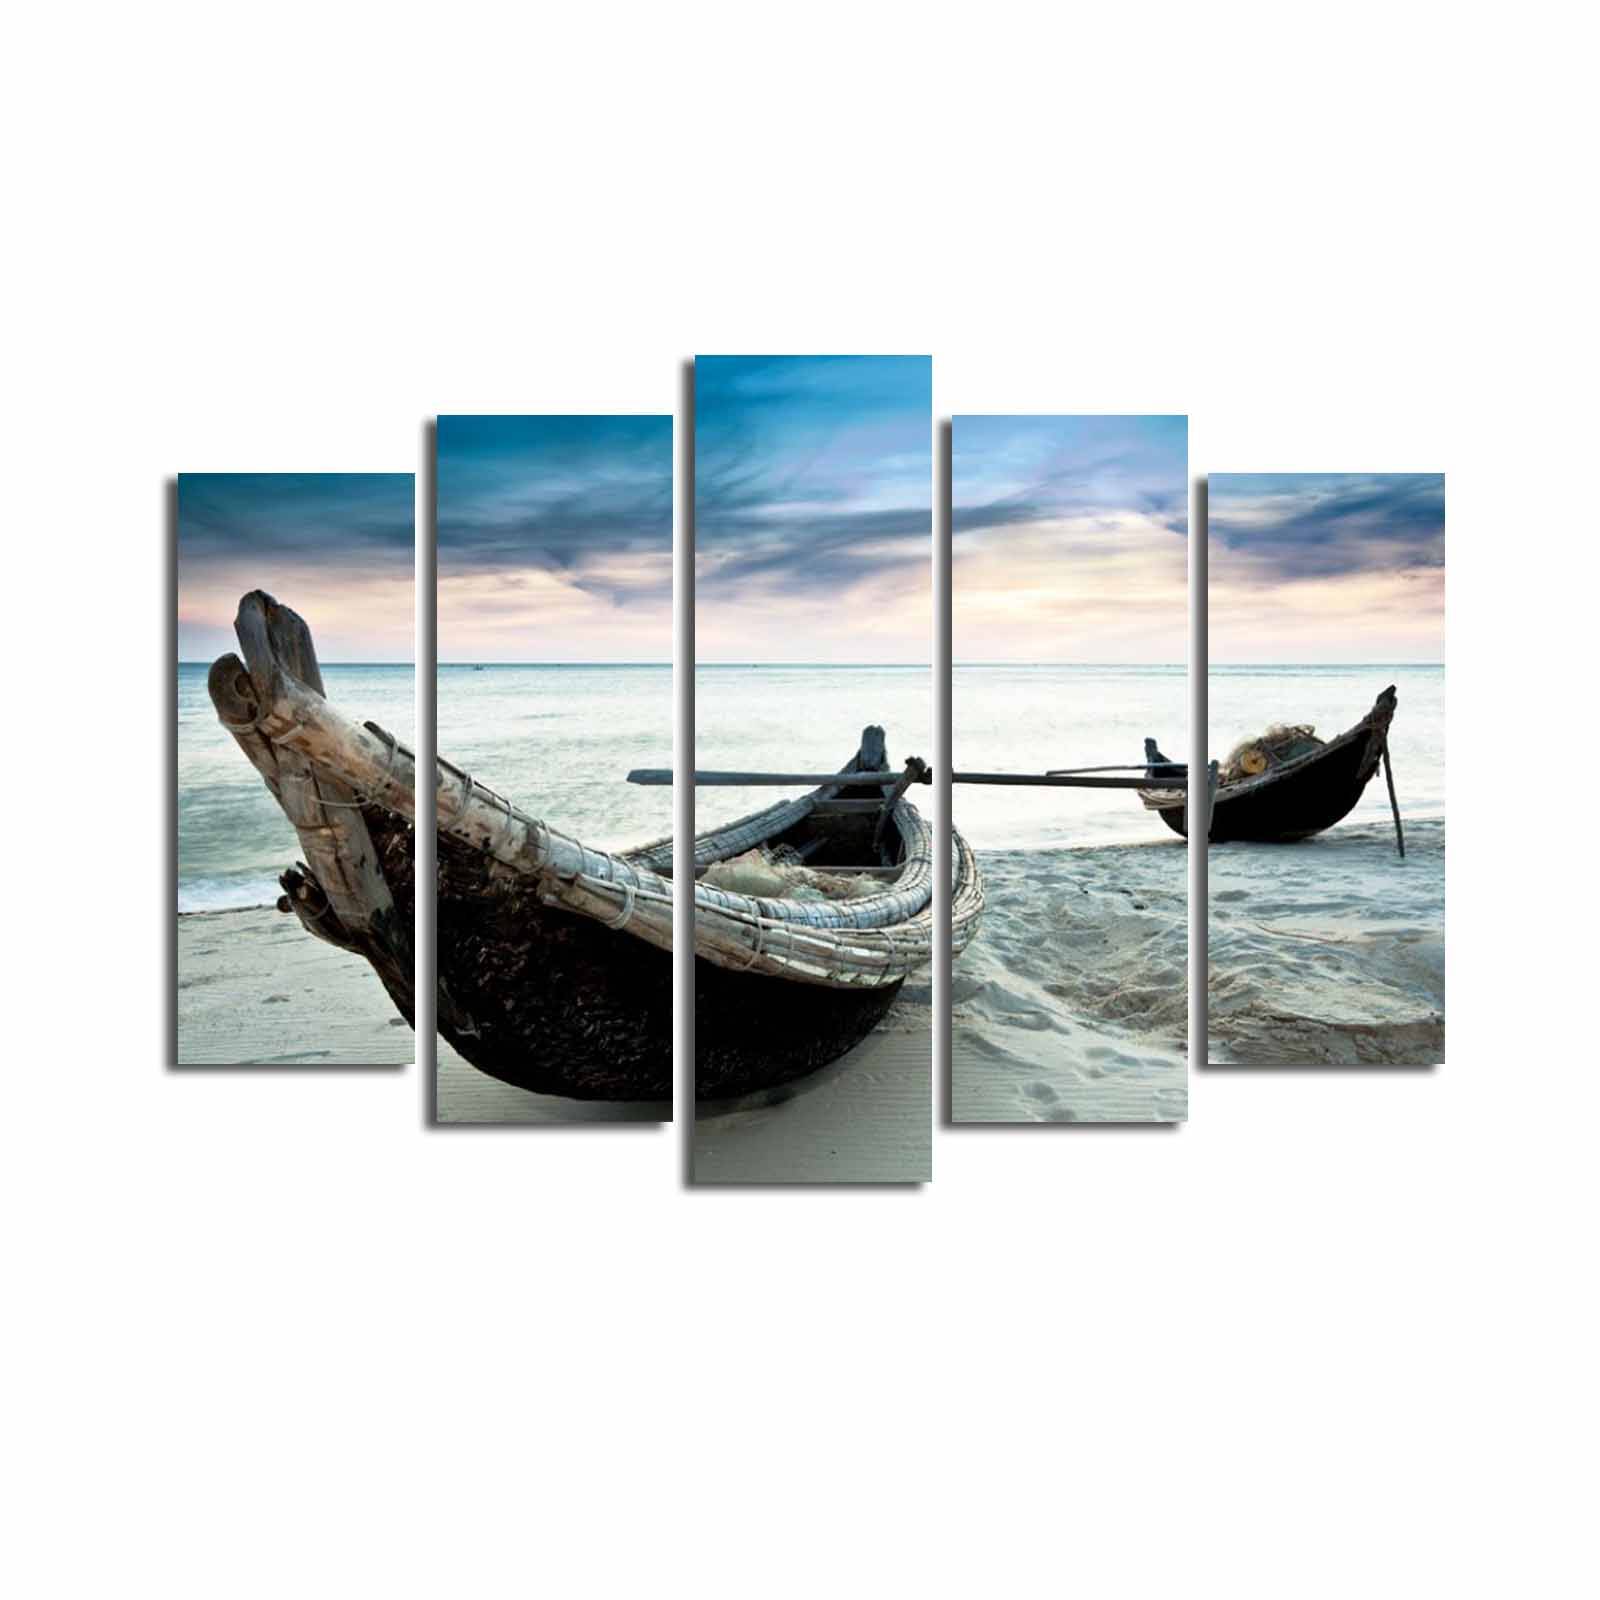 Pentittico Atos dipinto Modello barche sulla spiaggia